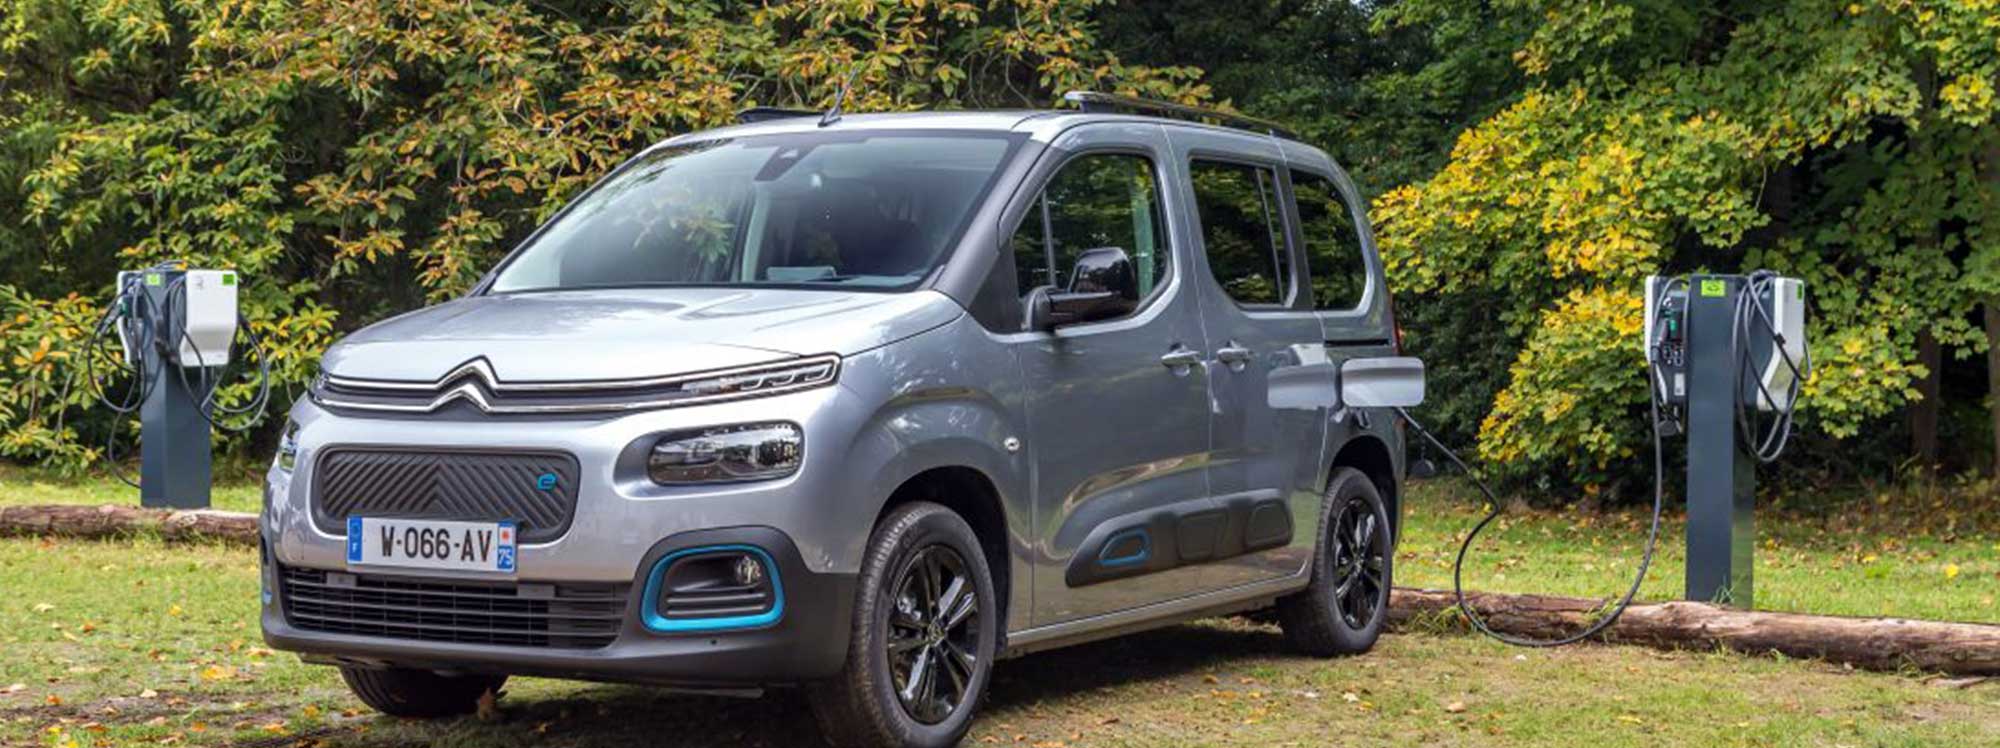 Citroën estrena el nuevo Ë-Berlingo eléctrico